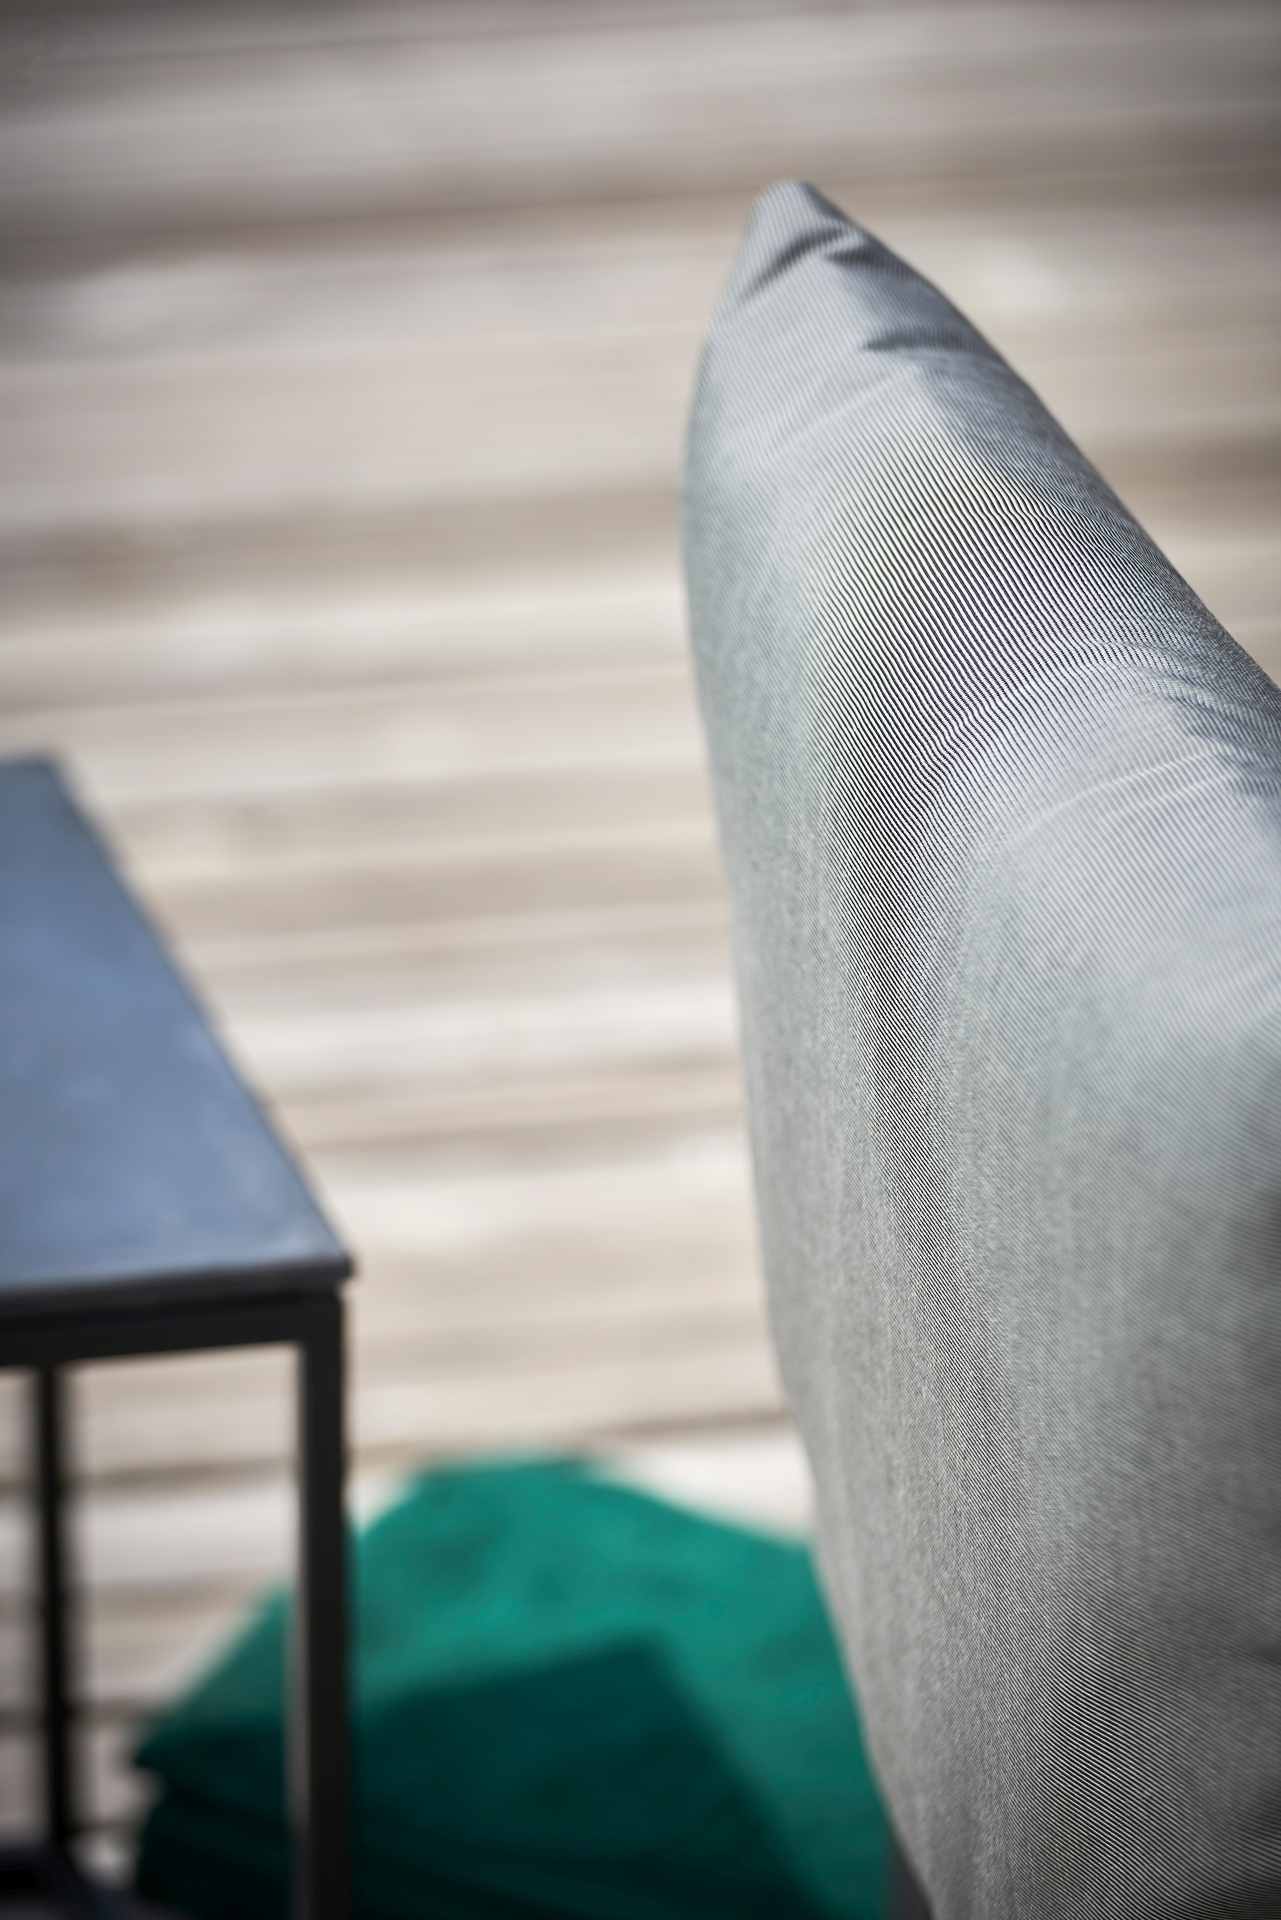 Die Gartenlounge Domino bestehend aus einer 5er-Kombination und einem Sessel. Damit ist sie ein echter Hingucker in deinem Garten. Designet wurde es von der Marke Jan Kurtz. Das Gestell ist aus Aluminium und hat eine taupe Farbe. Der Bezug ist Taupe.